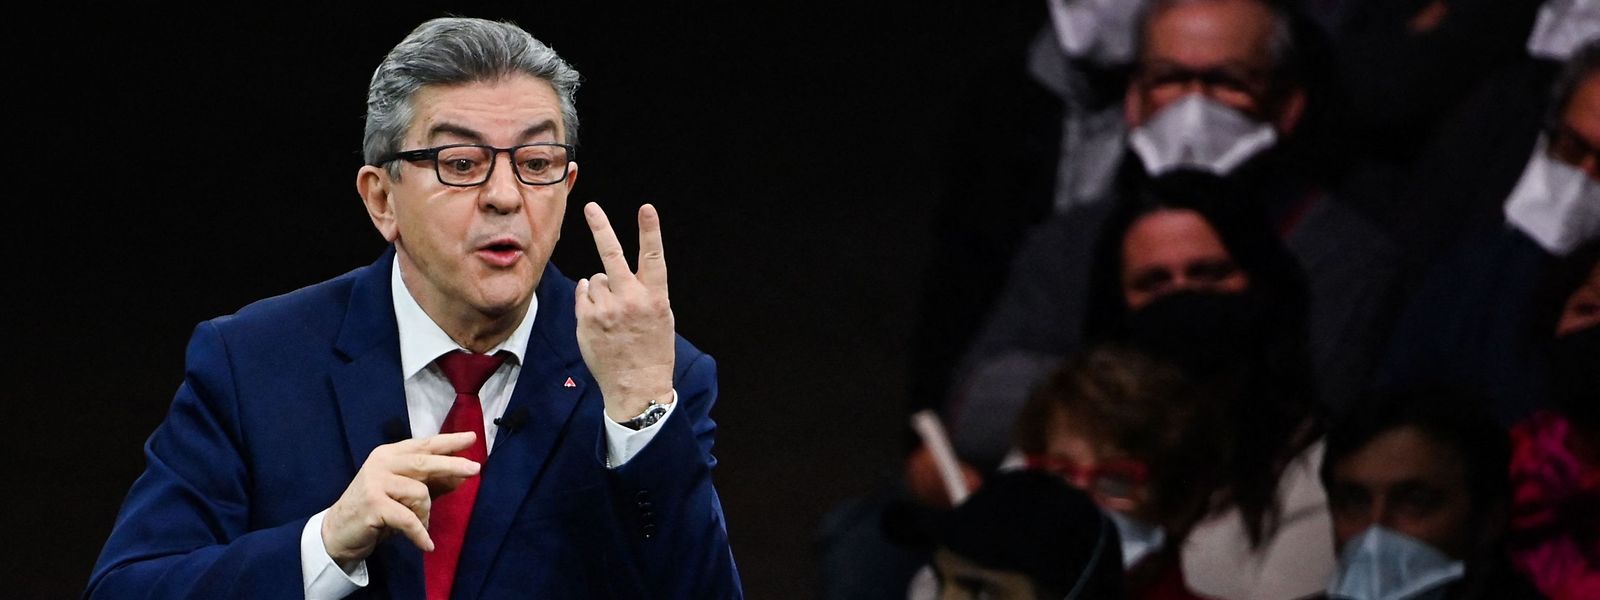 Le candidat insoumis Jean-Luc Mélenchon a dénoncé devant quelque 8.000 sympathisants, dans un meeting à Montpellier, les «inégalités» sociales et les «profiteurs de crise».